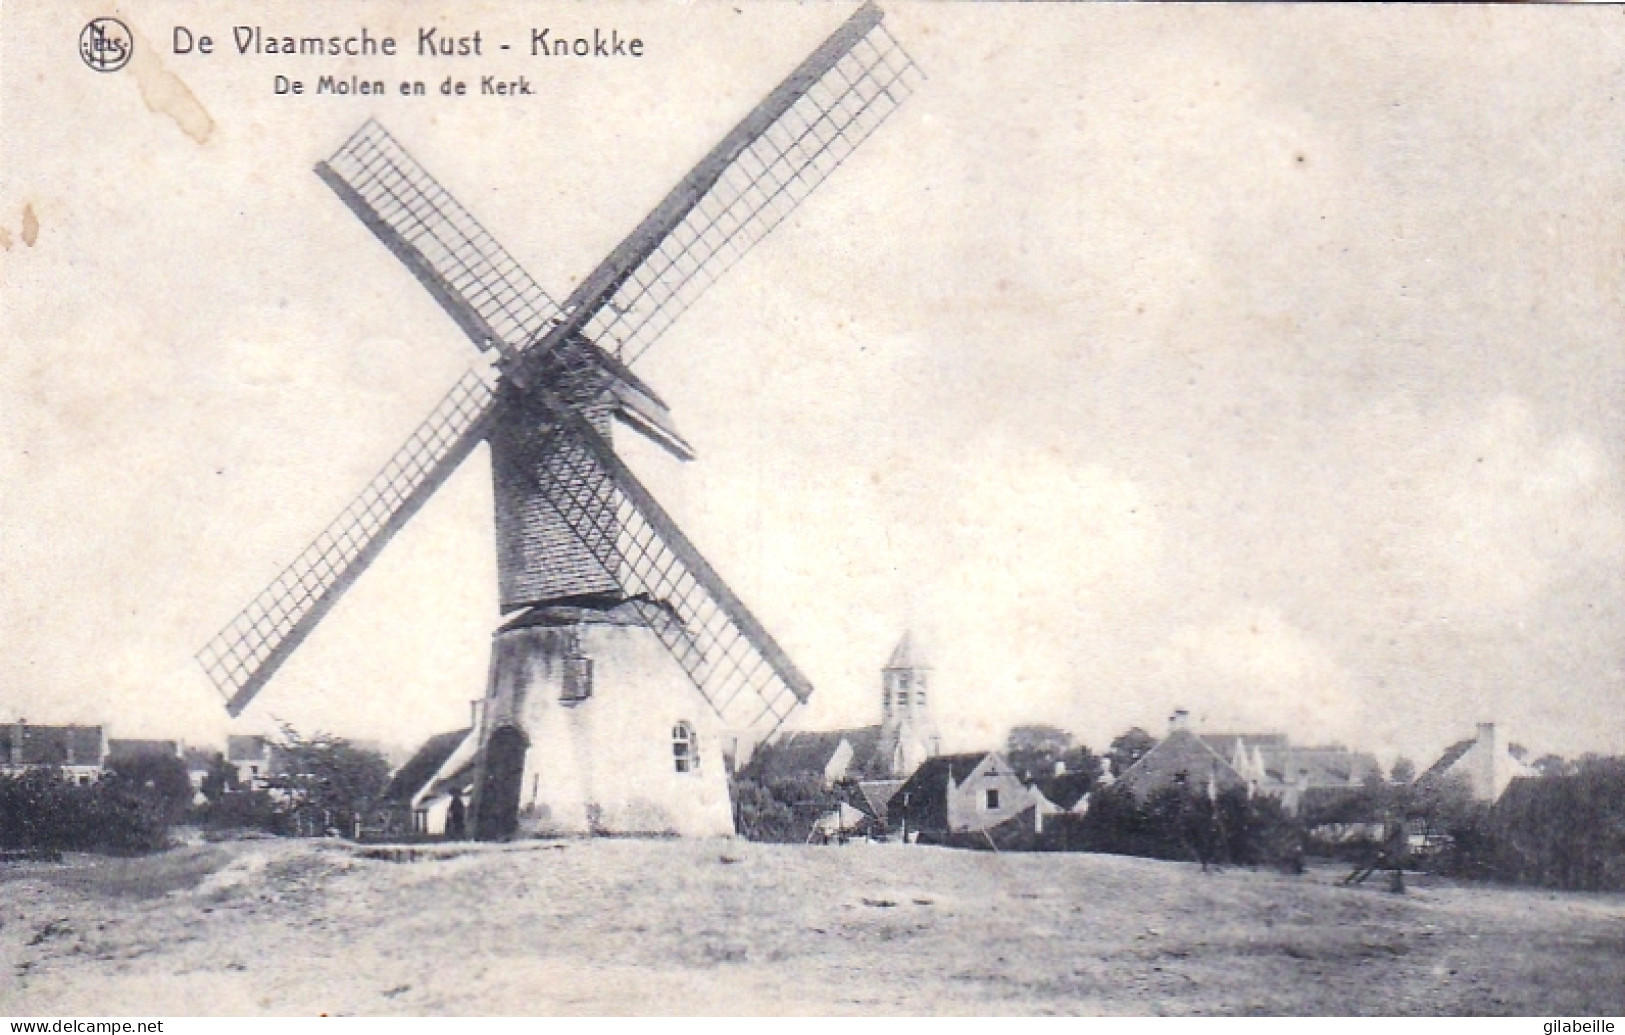  KNOKKE - KNOCKE Le ZOUTE -  De Molen En De Kerk - Le Moulin - L'église - Knokke